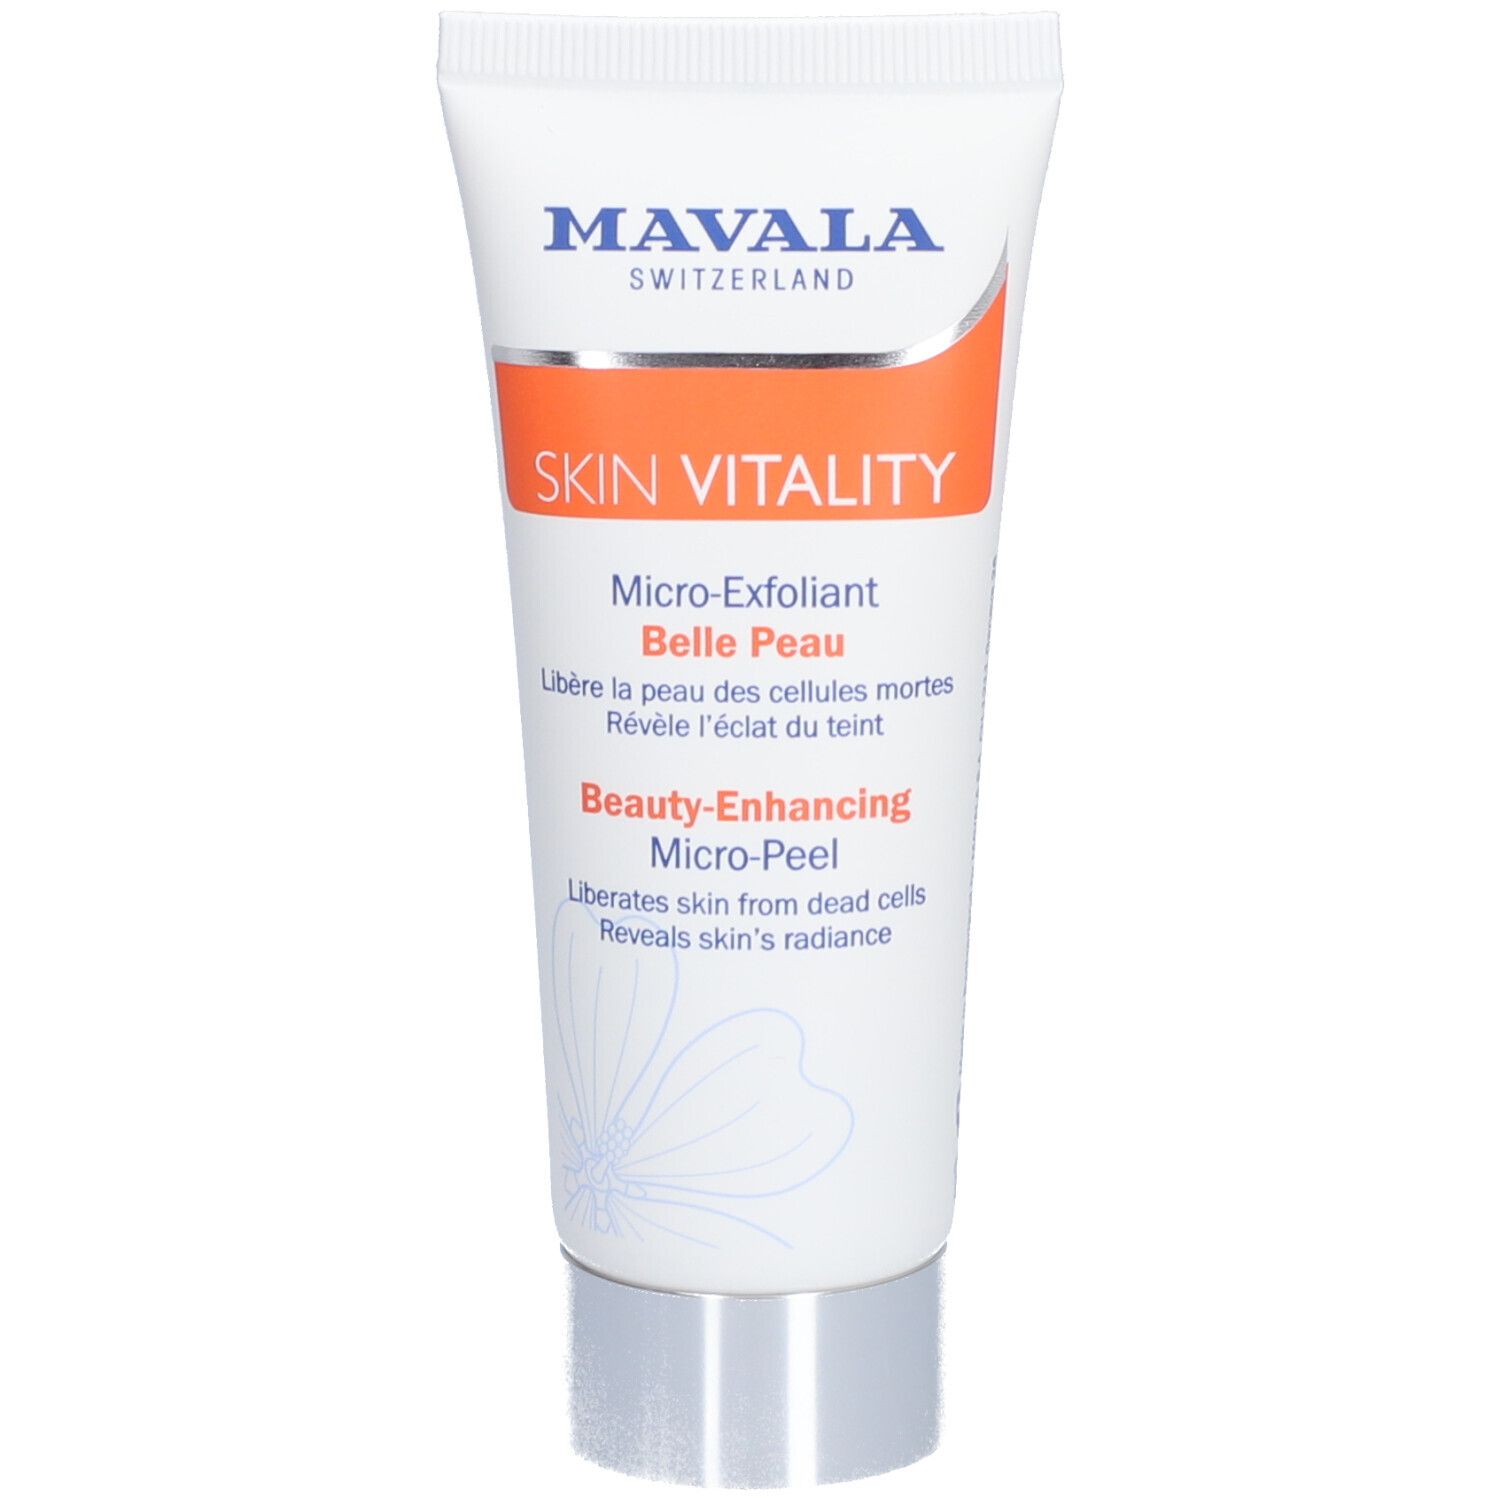 Mavala Skin Vitality Micro-Exfoliant Belle Peau